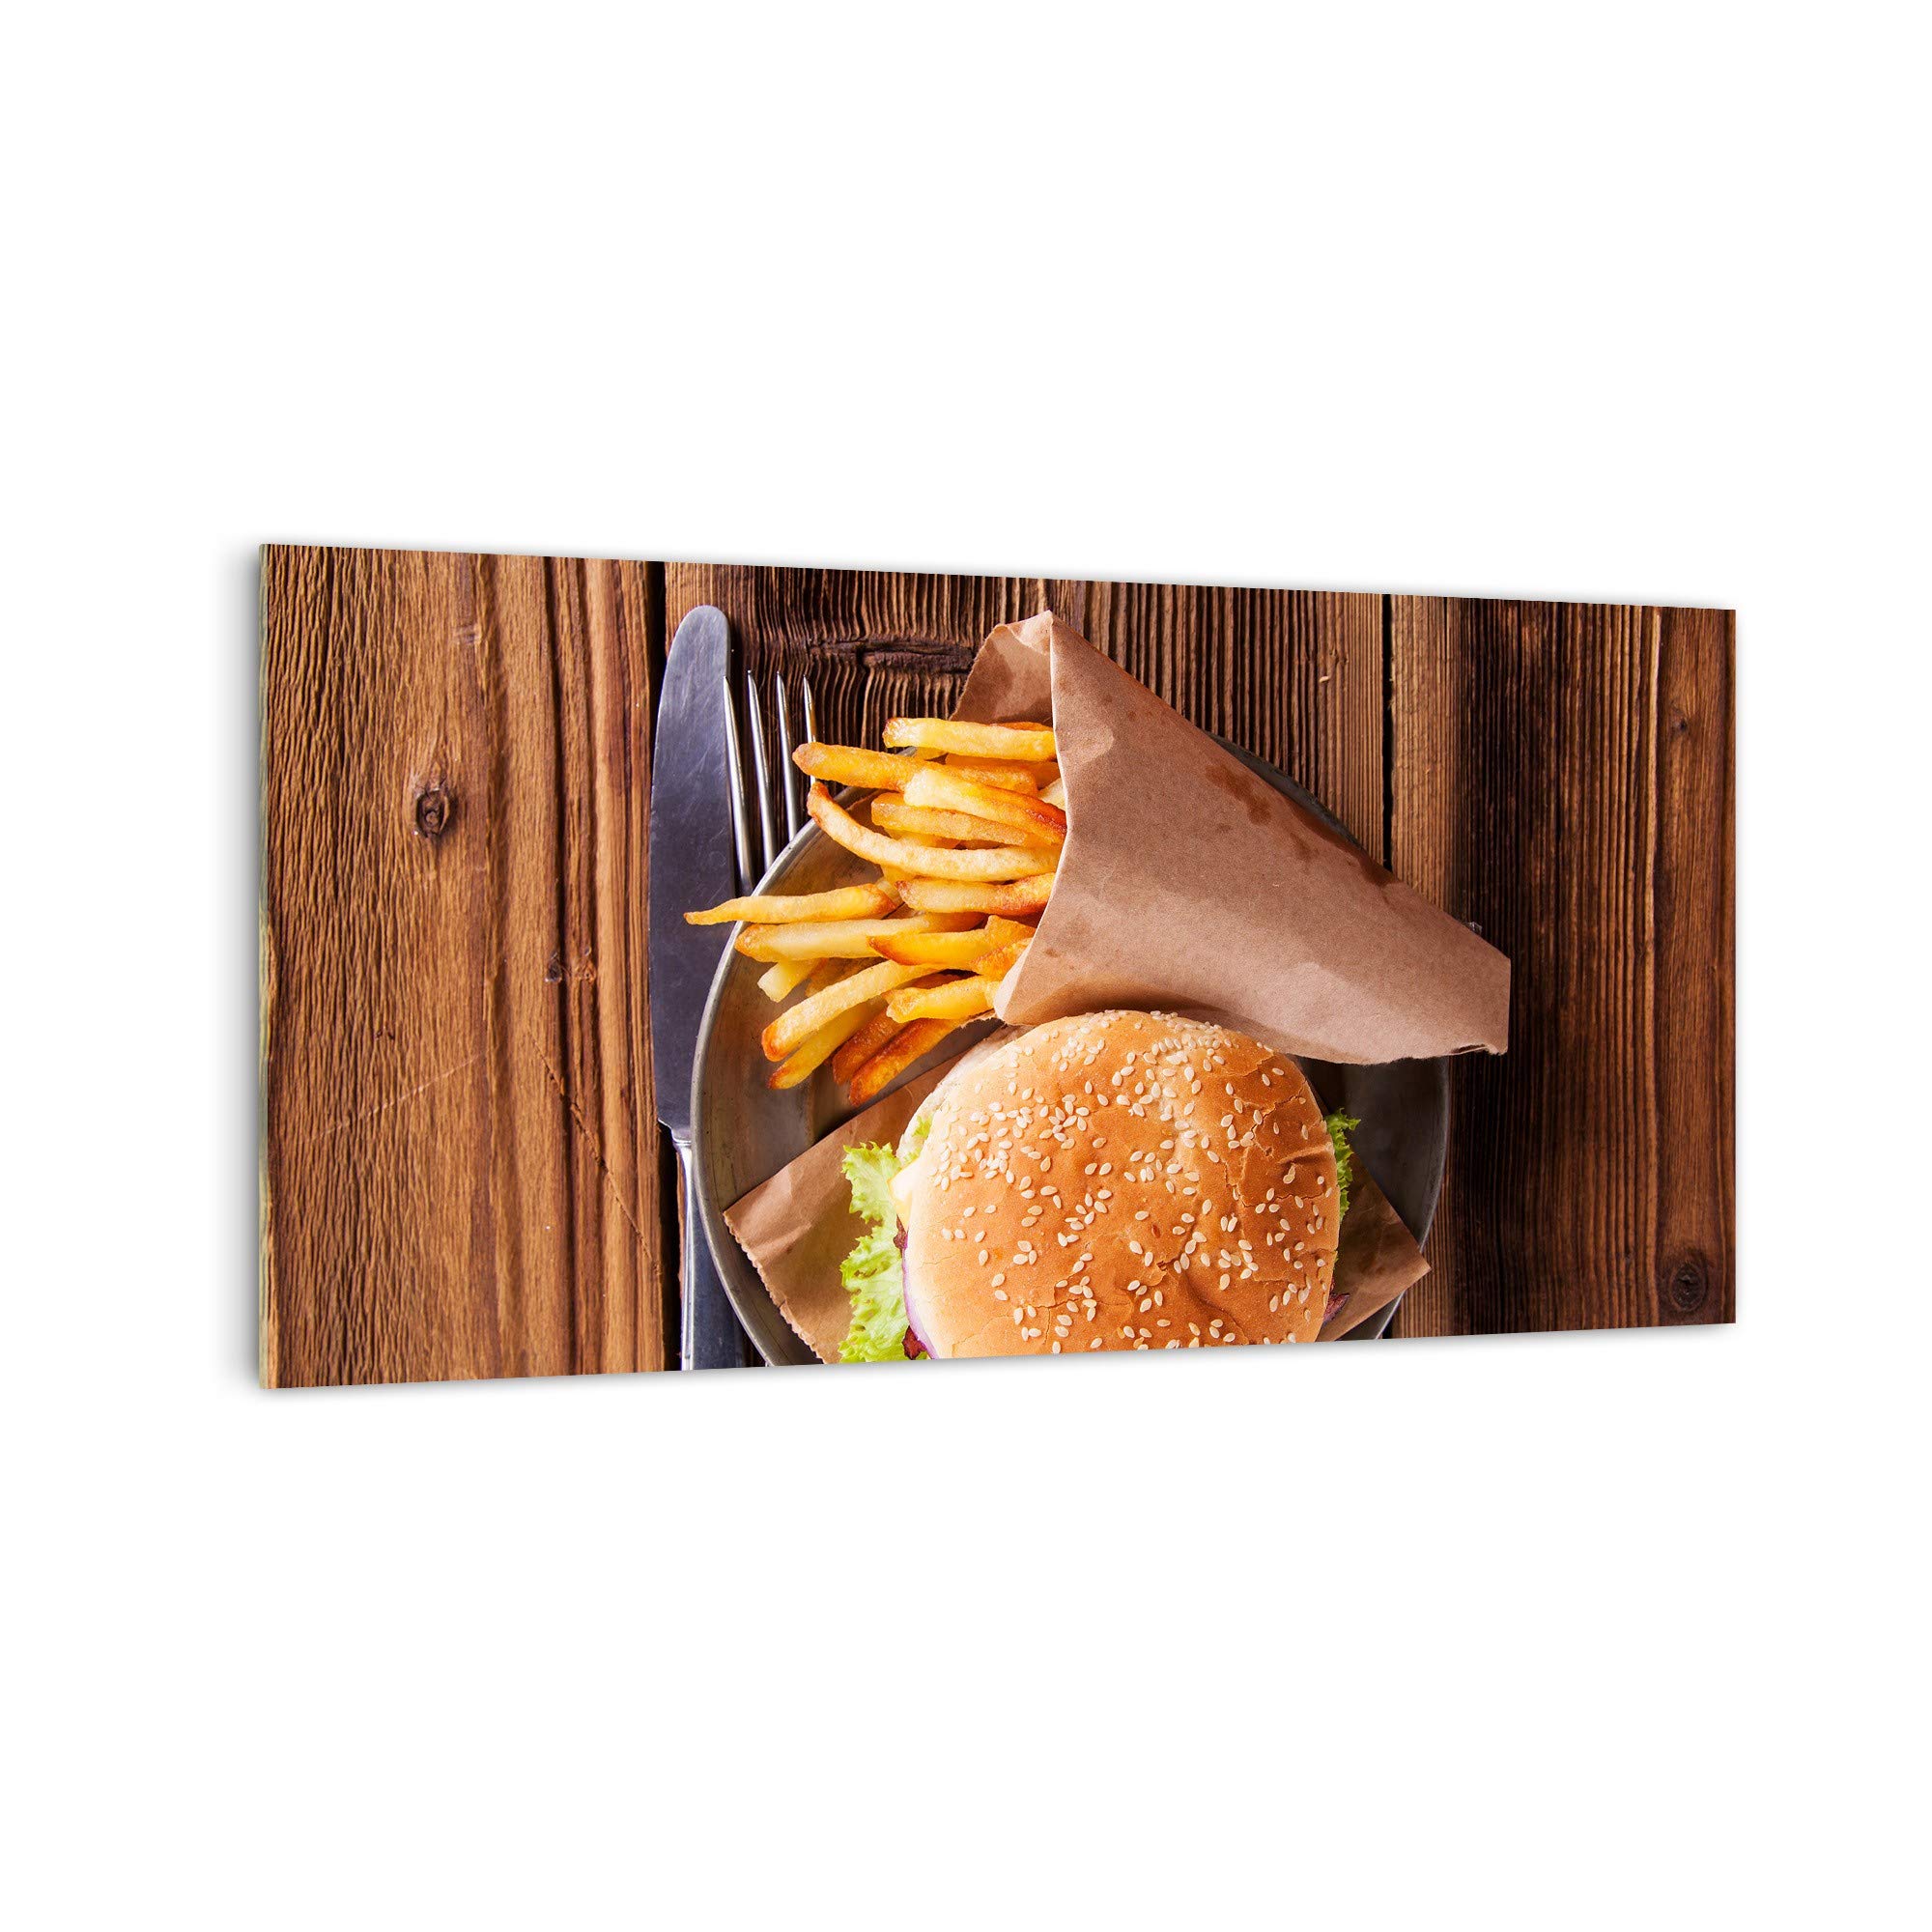 DekoGlas Küchenrückwand 'Burger von oben' in div. Größen, Glas-Rückwand, Wandpaneele, Spritzschutz & Fliesenspiegel